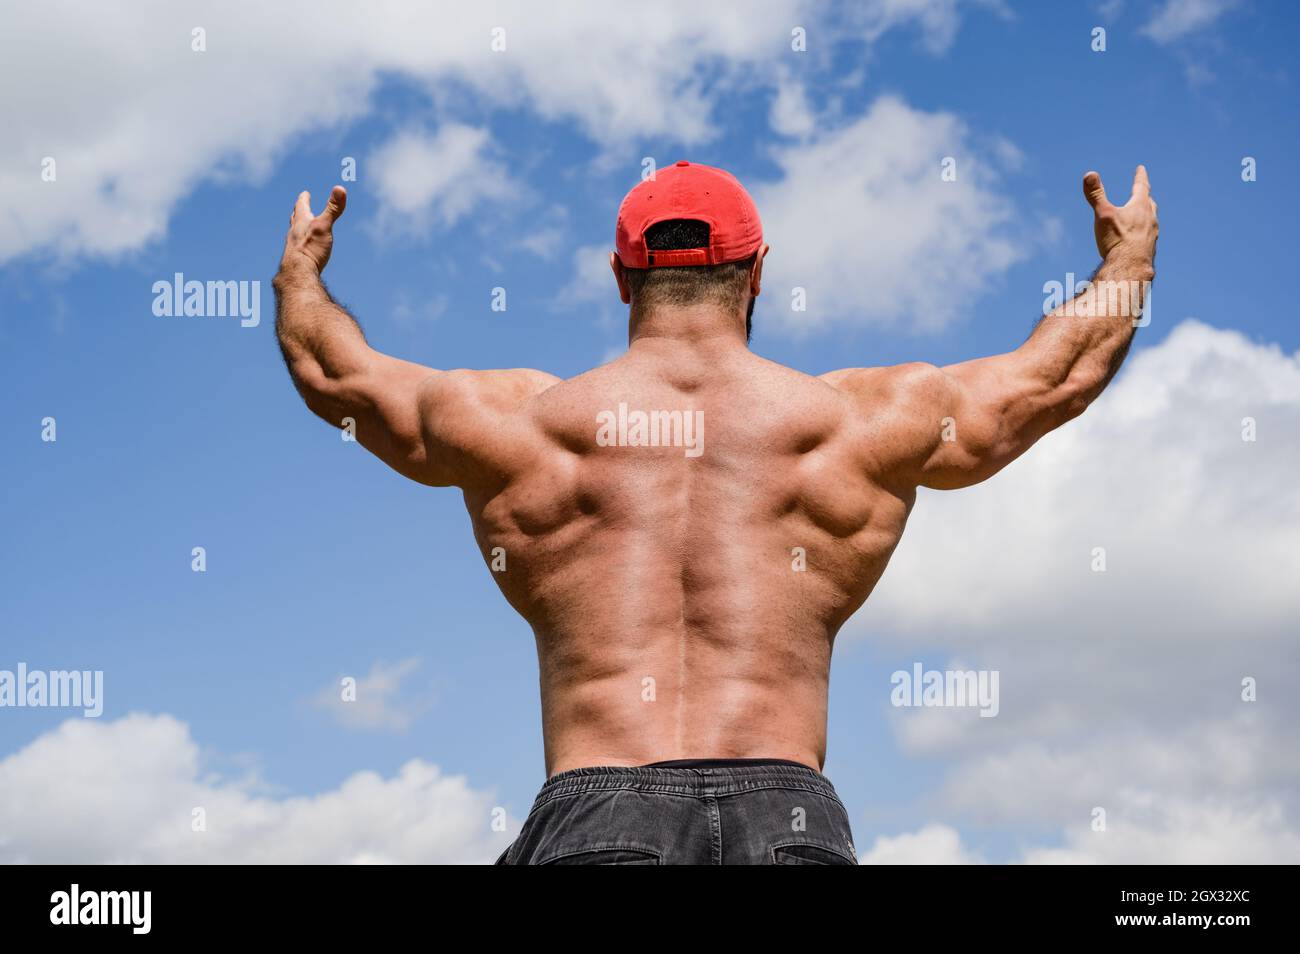 forte giovane maschio in testa rossa alzando le mani verso cieli blu mostrando forti e potenti muscoli posteriori Foto Stock